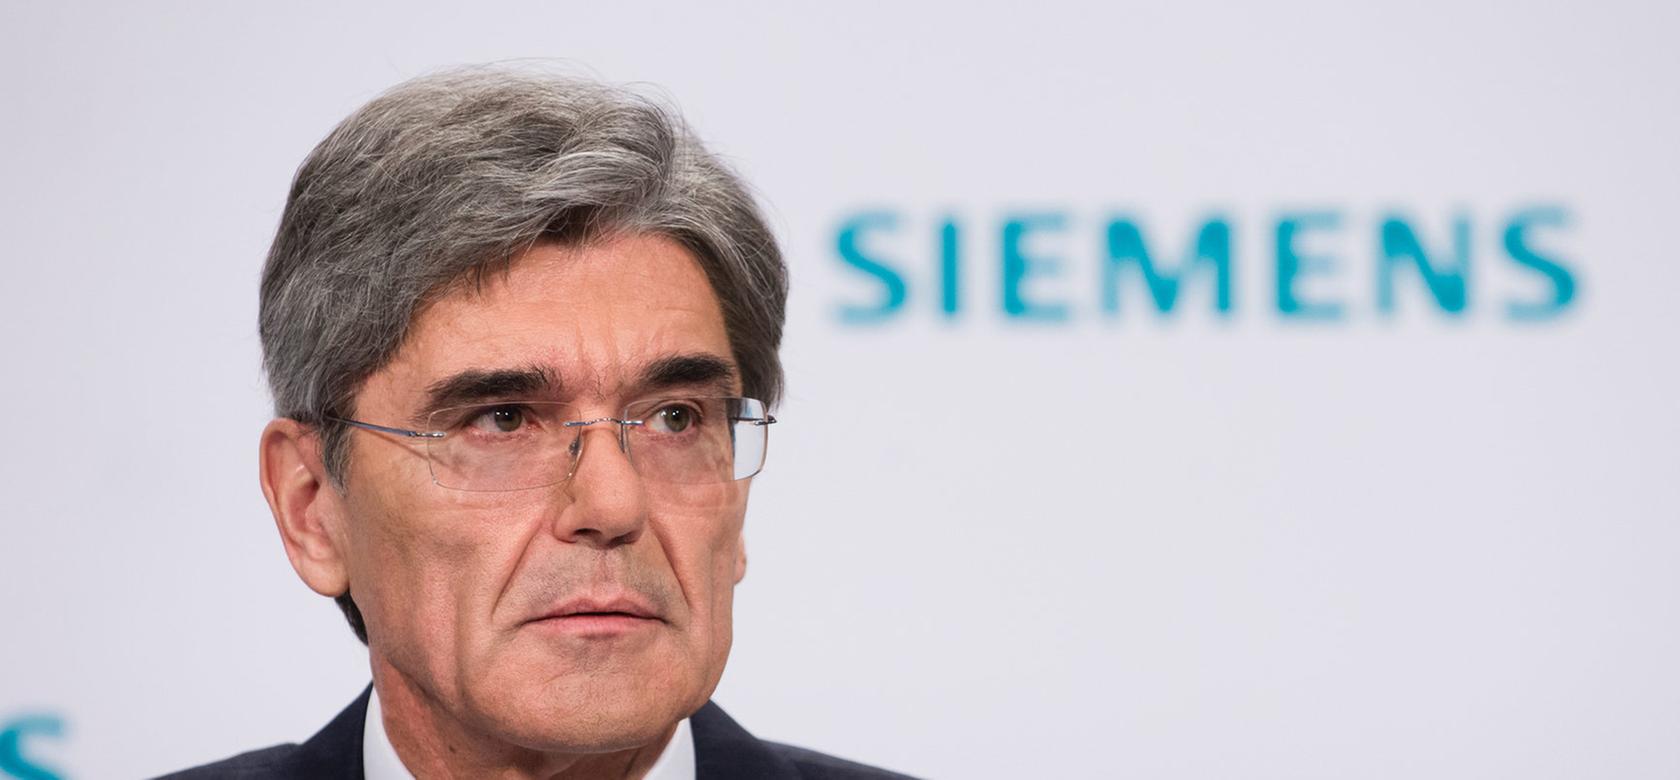 Joe Kaeser erwartet "ein vergleichsweise gutes Jahr für Siemens".